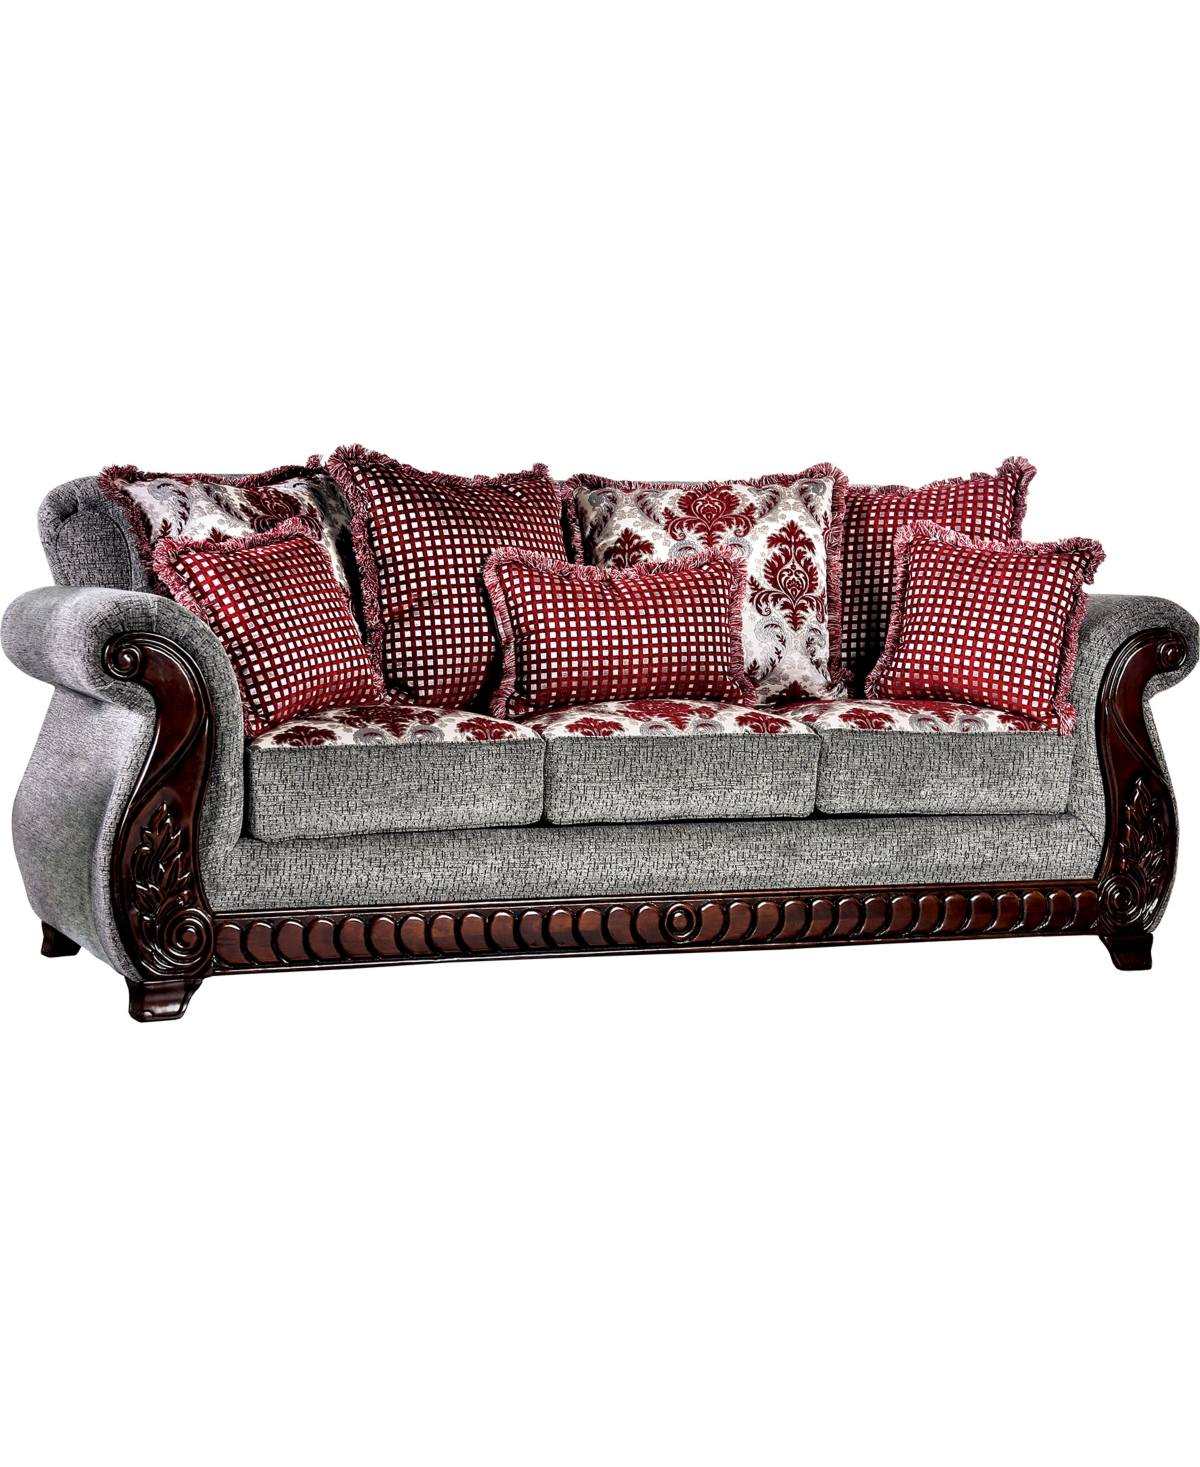 Ebbit Upholstered Sofa